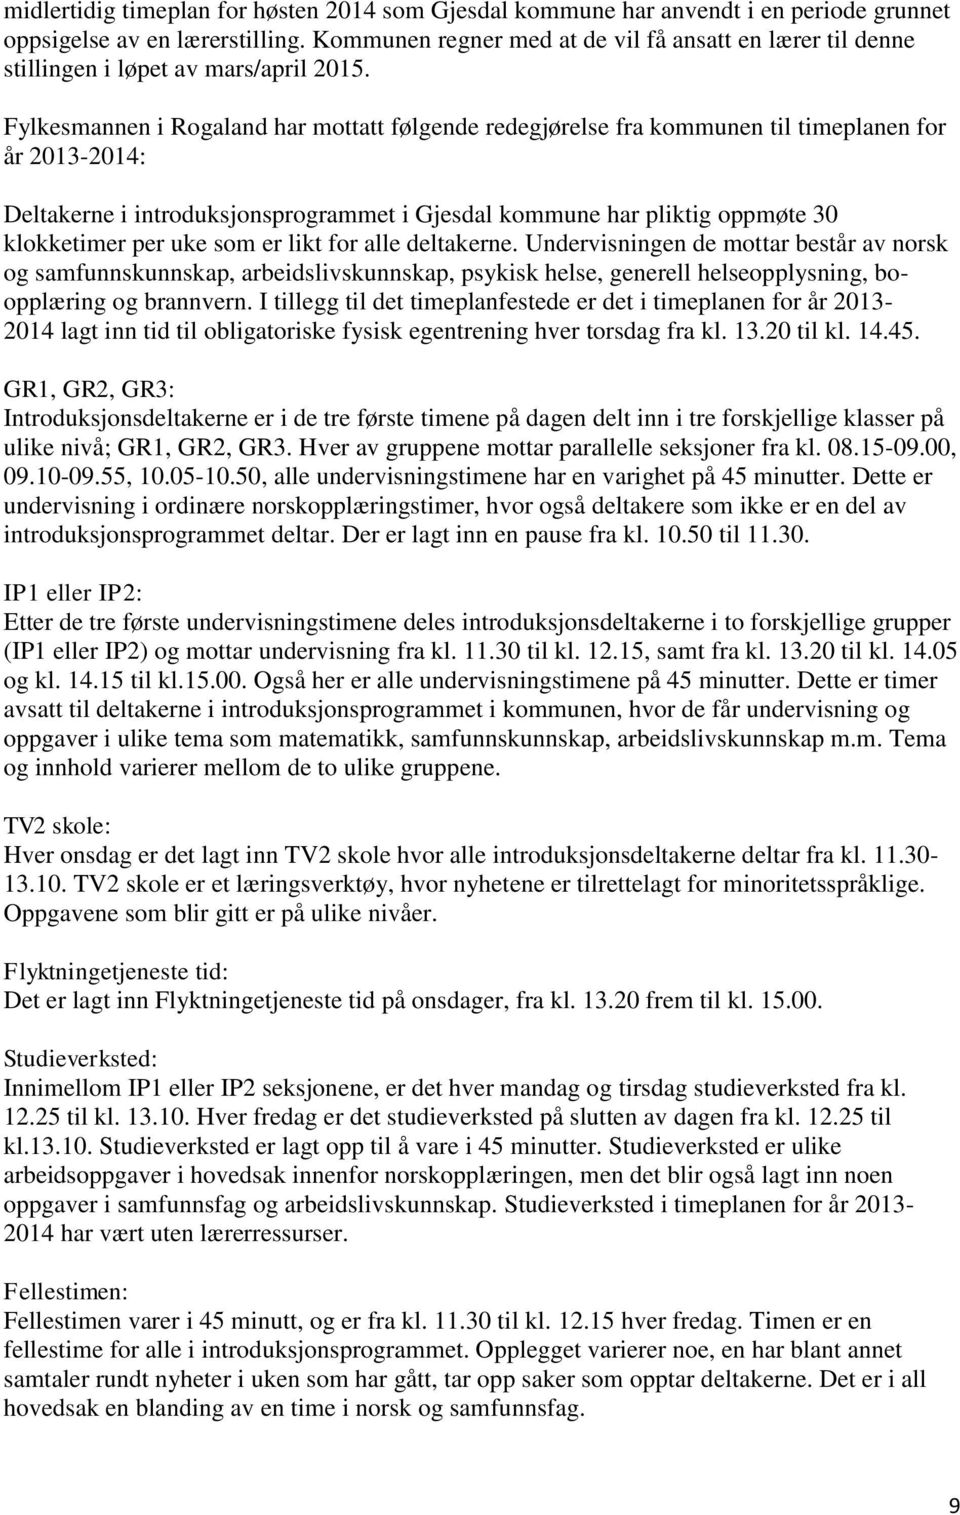 Fylkesmannen i Rogaland har mottatt følgende redegjørelse fra kommunen til timeplanen for år 2013-2014: Deltakerne i introduksjonsprogrammet i Gjesdal kommune har pliktig oppmøte 30 klokketimer per